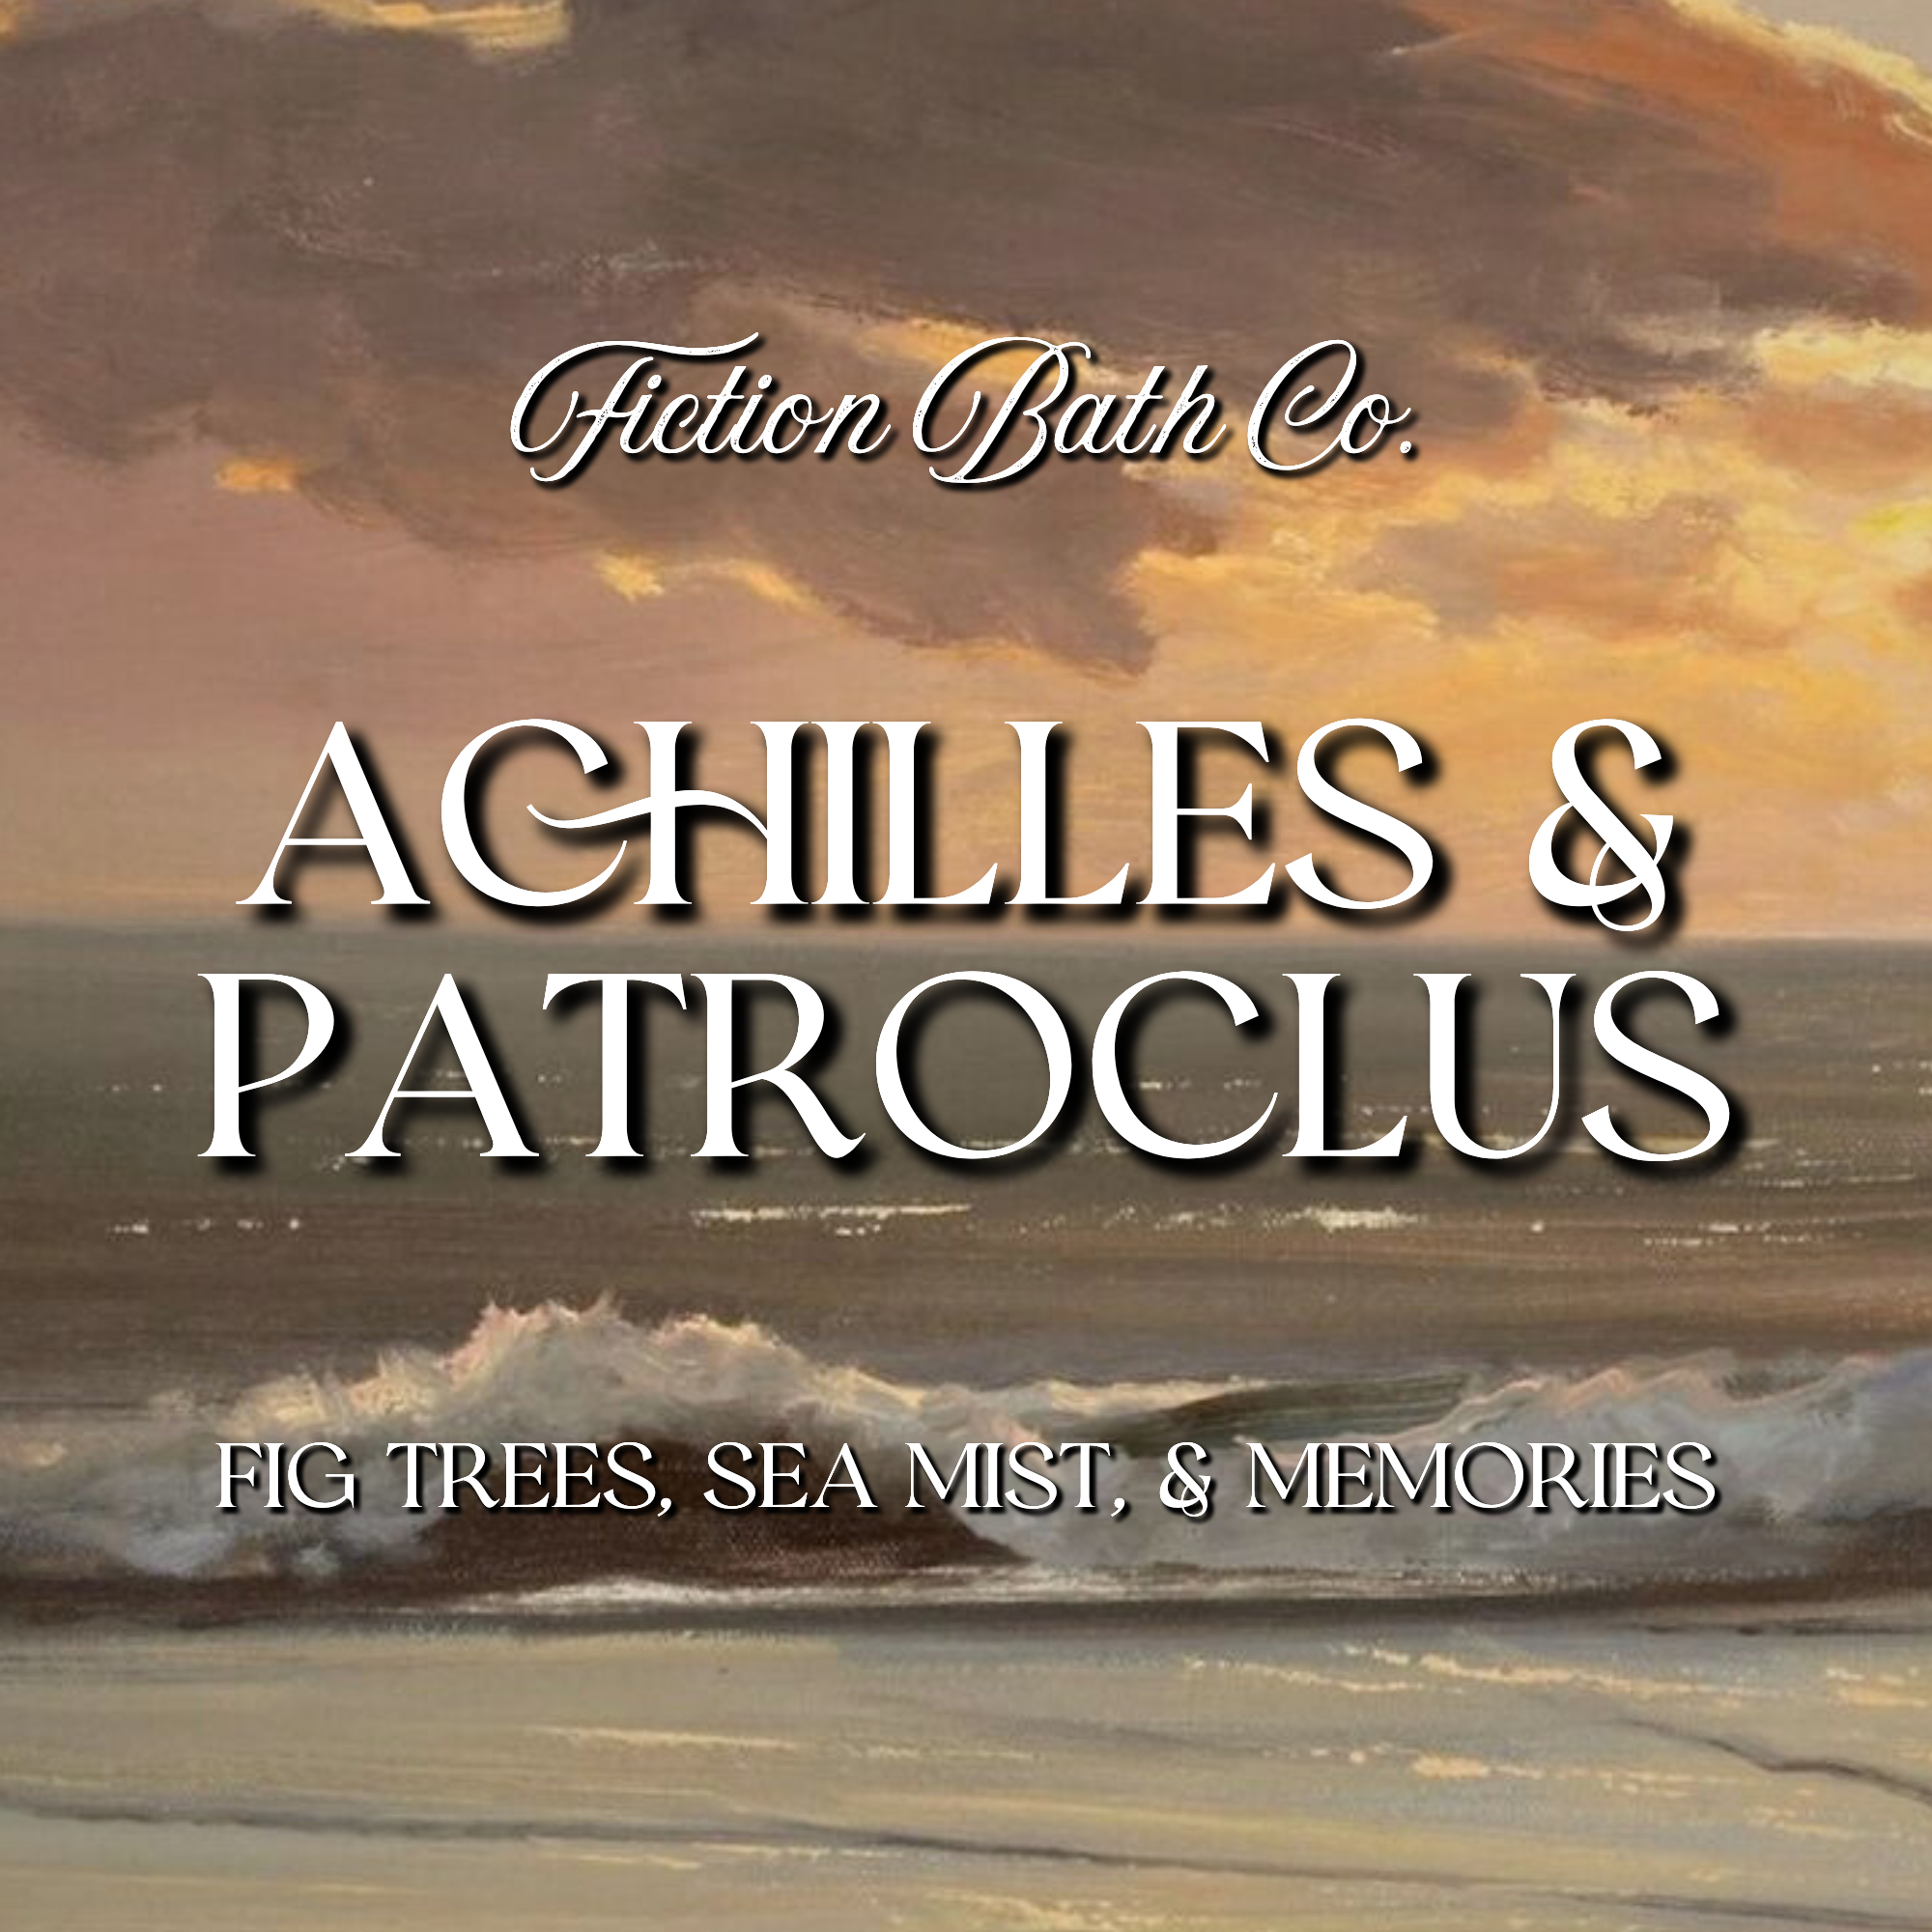 ACHILLES & PATROCLUS